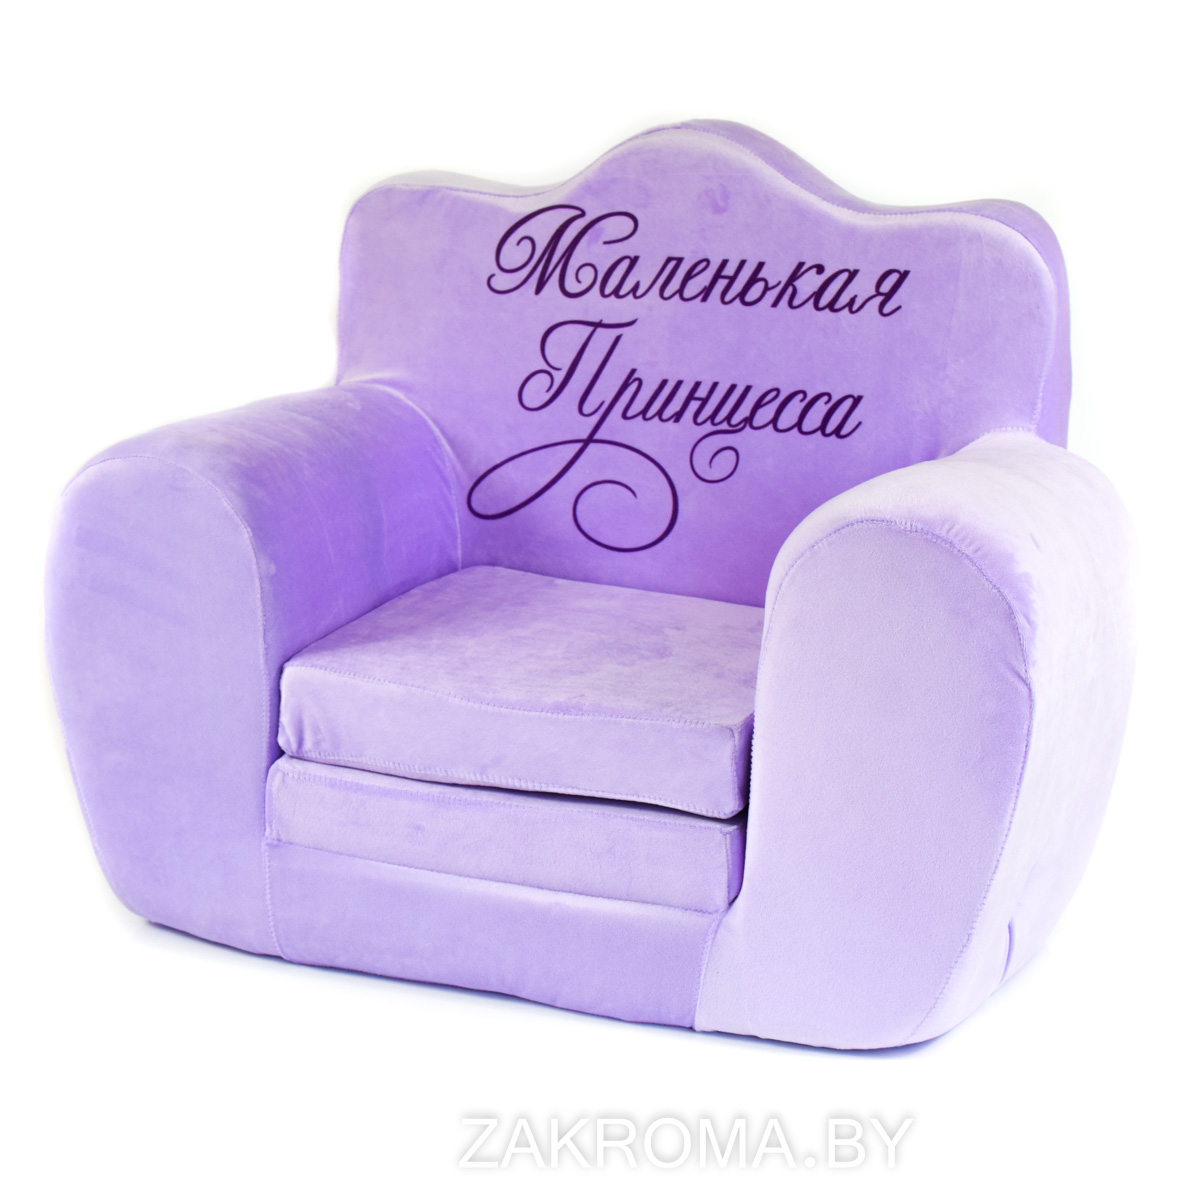 Детское кресло Маленькая принцесса. Кресло трон мягкое раскладное. Цвет сиреневый.